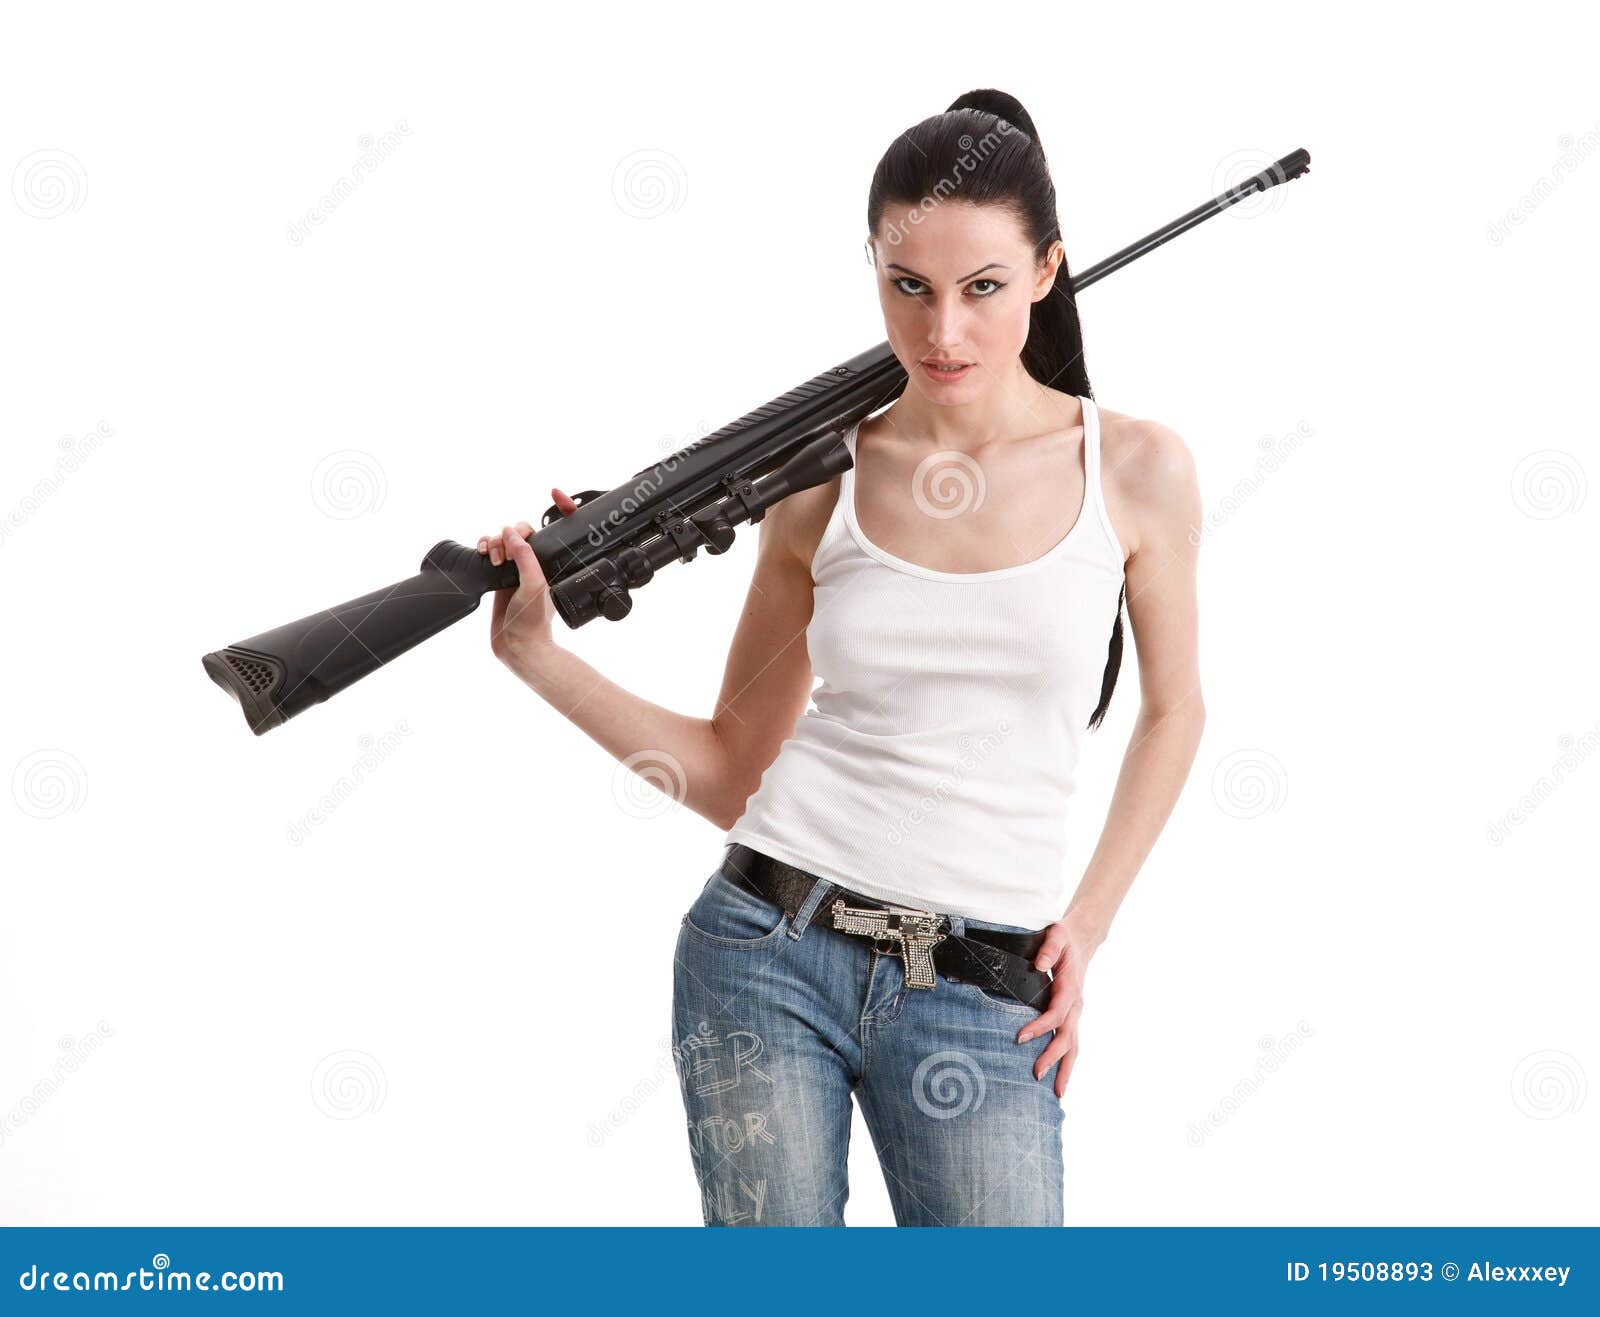 Sexy Female Sniper